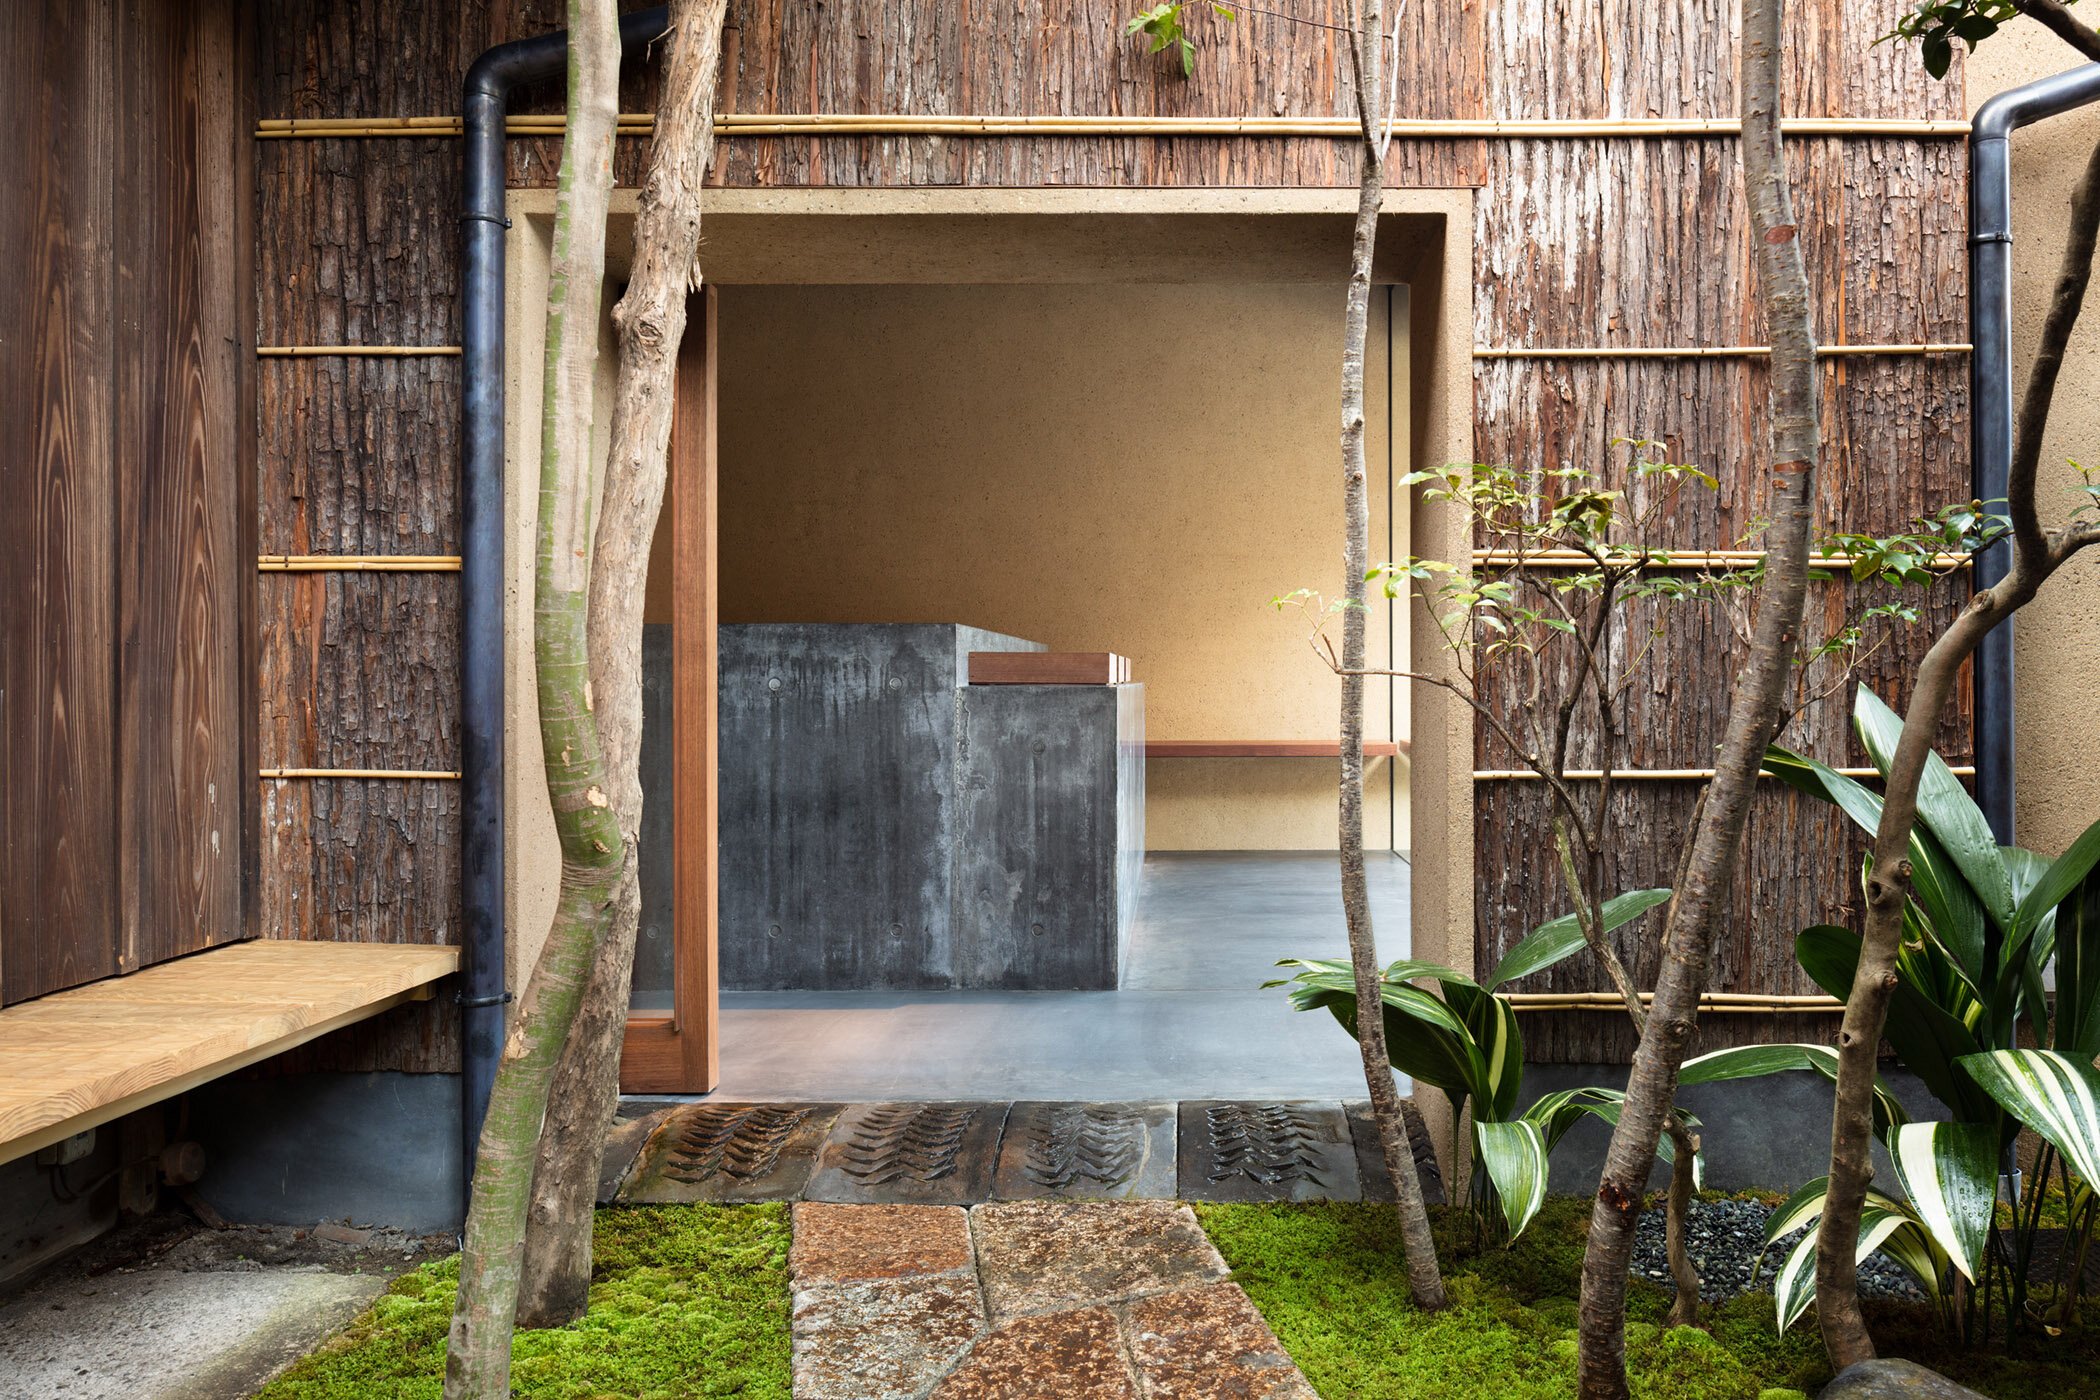  柳原照弘 Teruhiro Yanagihara Studioがインテリアデザインを手掛けた京都の尾張屋本店 菓子処。庭園側から見た外観 